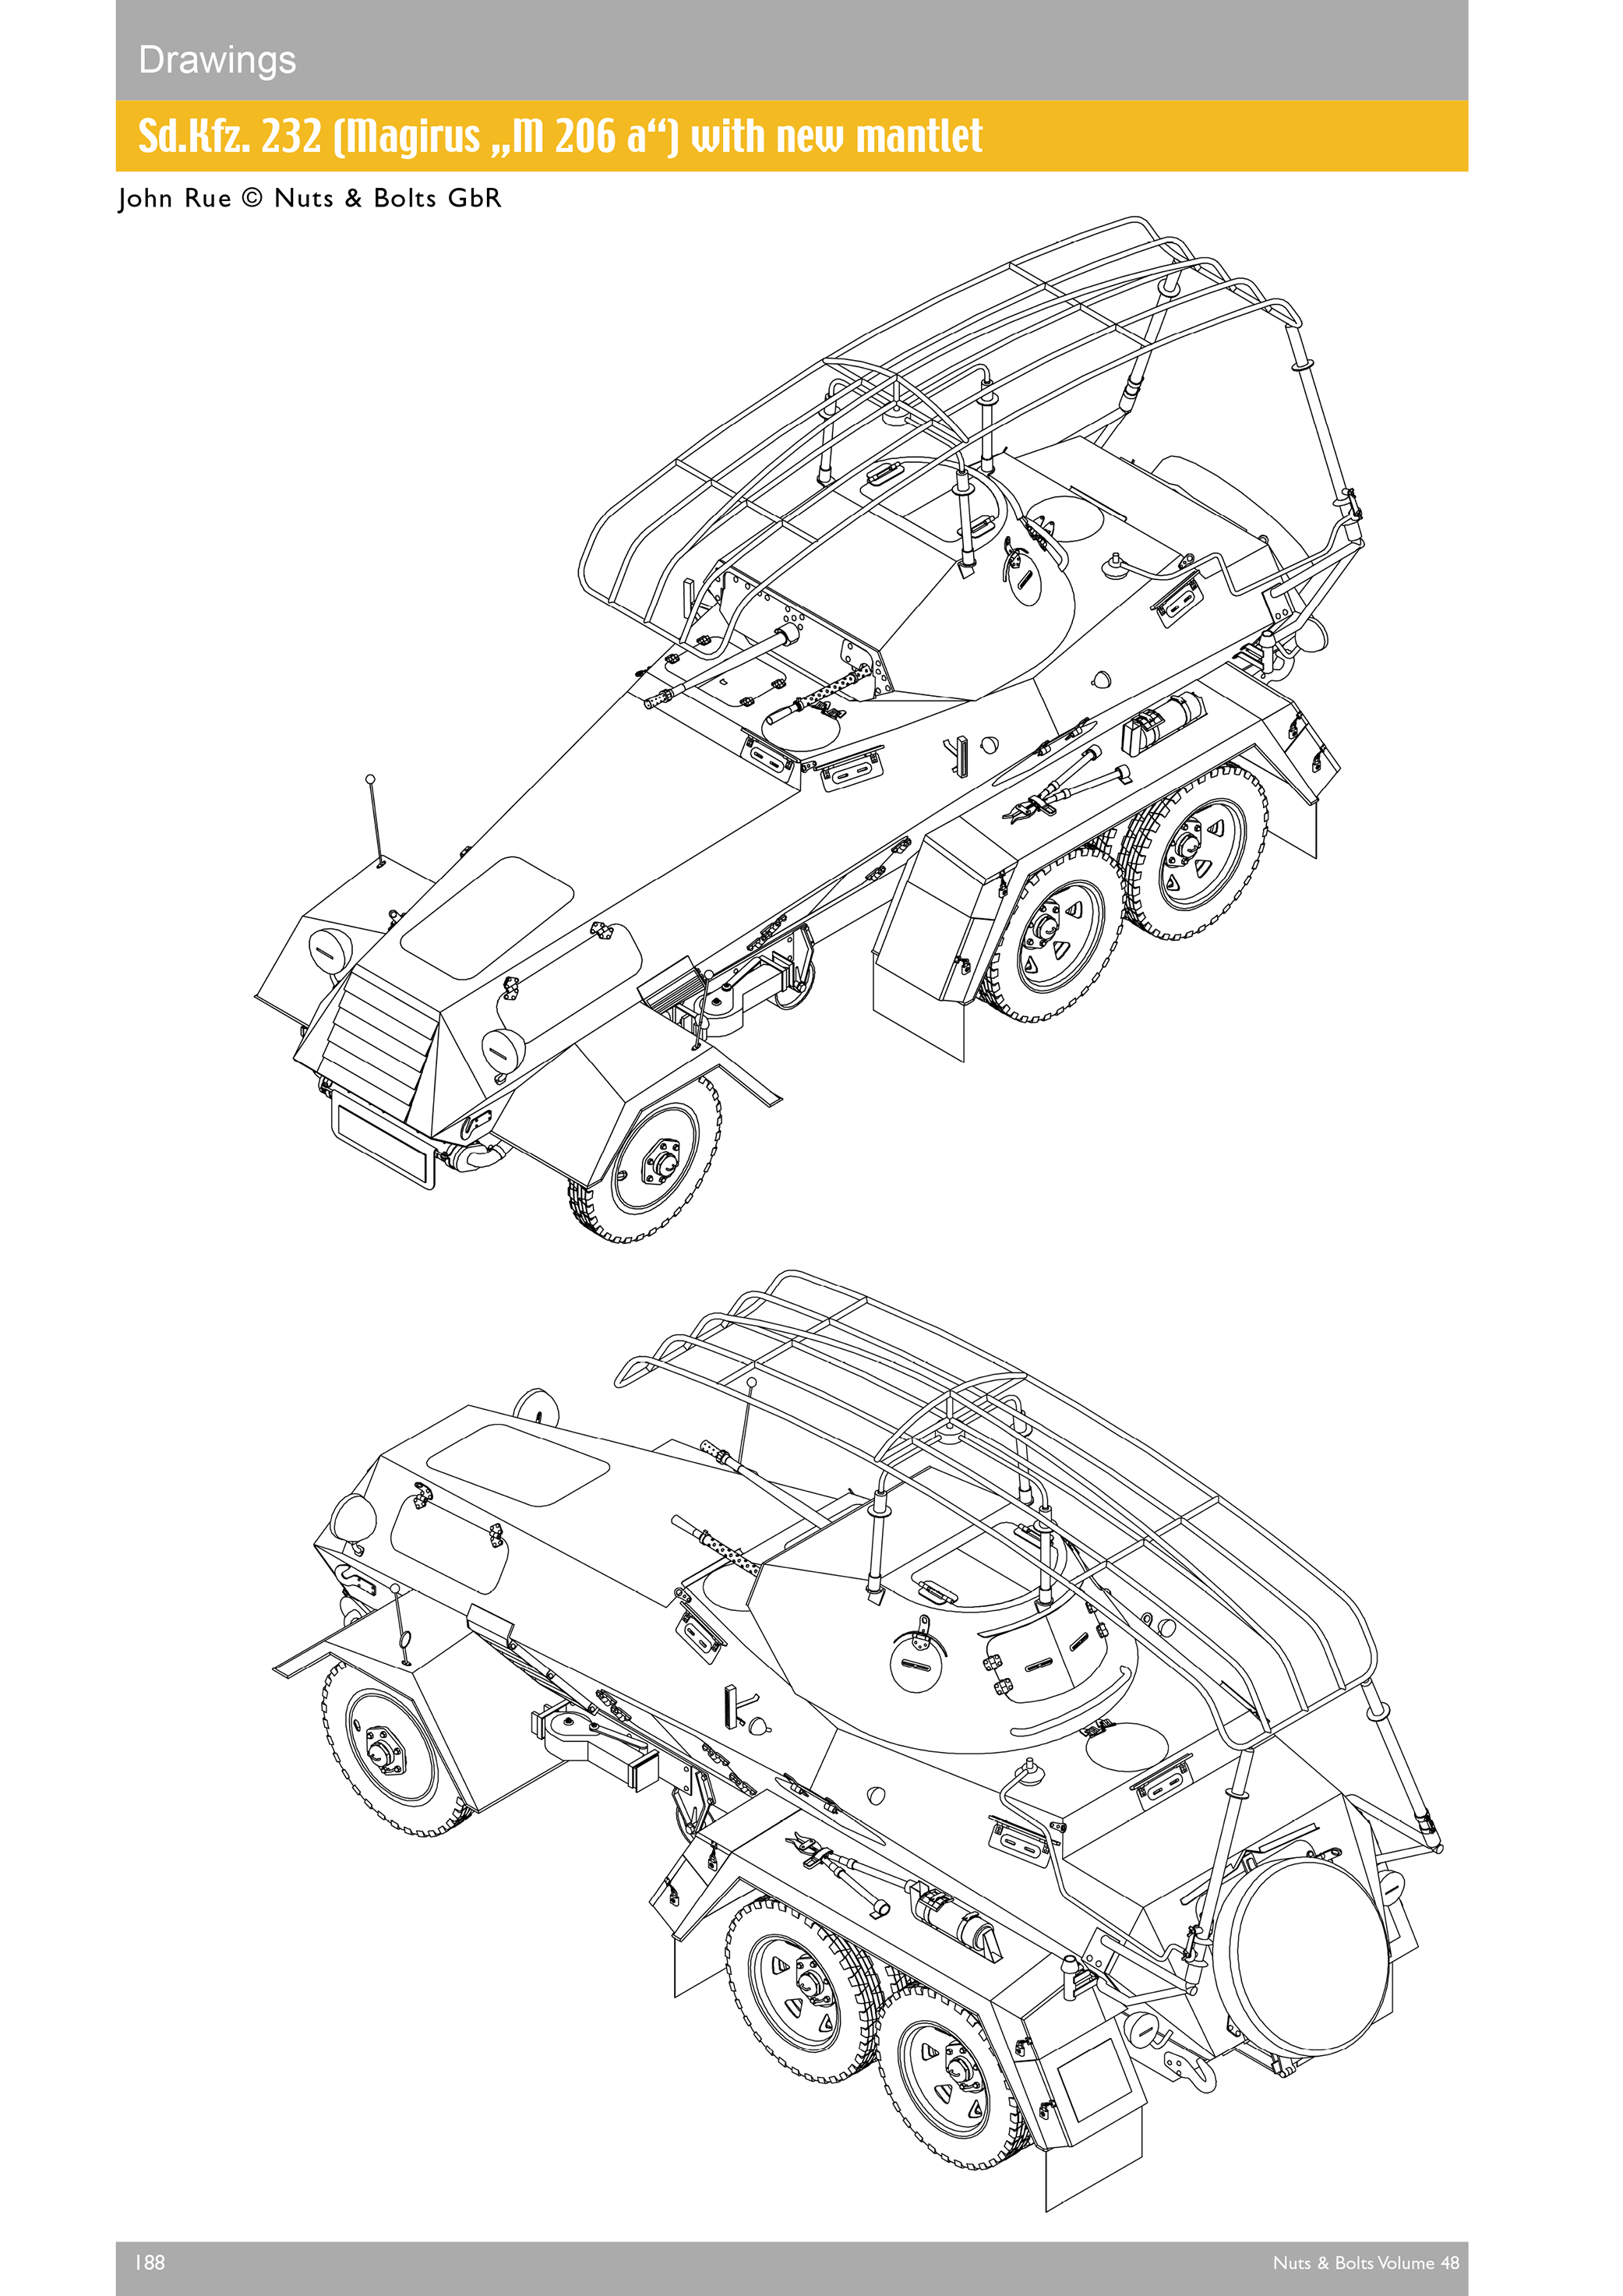 Vorbestellung Volume 48: schwerer Panzerspähwagen (6-Rad) on Büssing-NAG, Daimler-Benz and Magirus chassis Sd.Kfz. 231, 232, 263 and variants